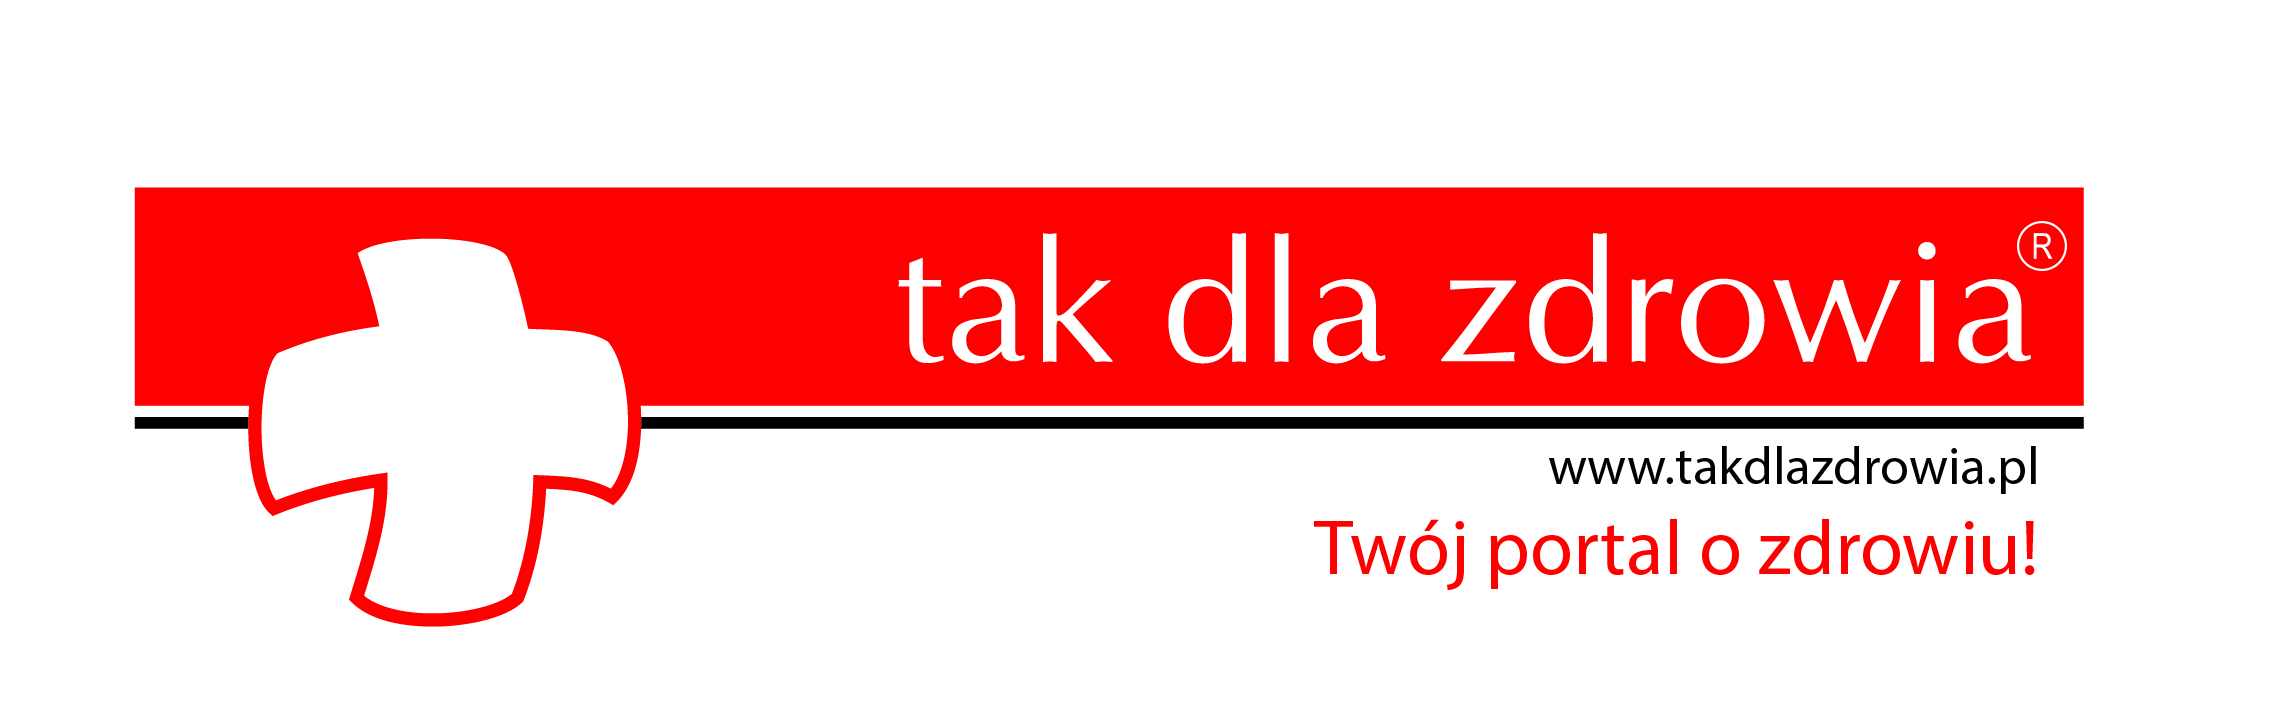 Portal www.takdlazdrowia.pl